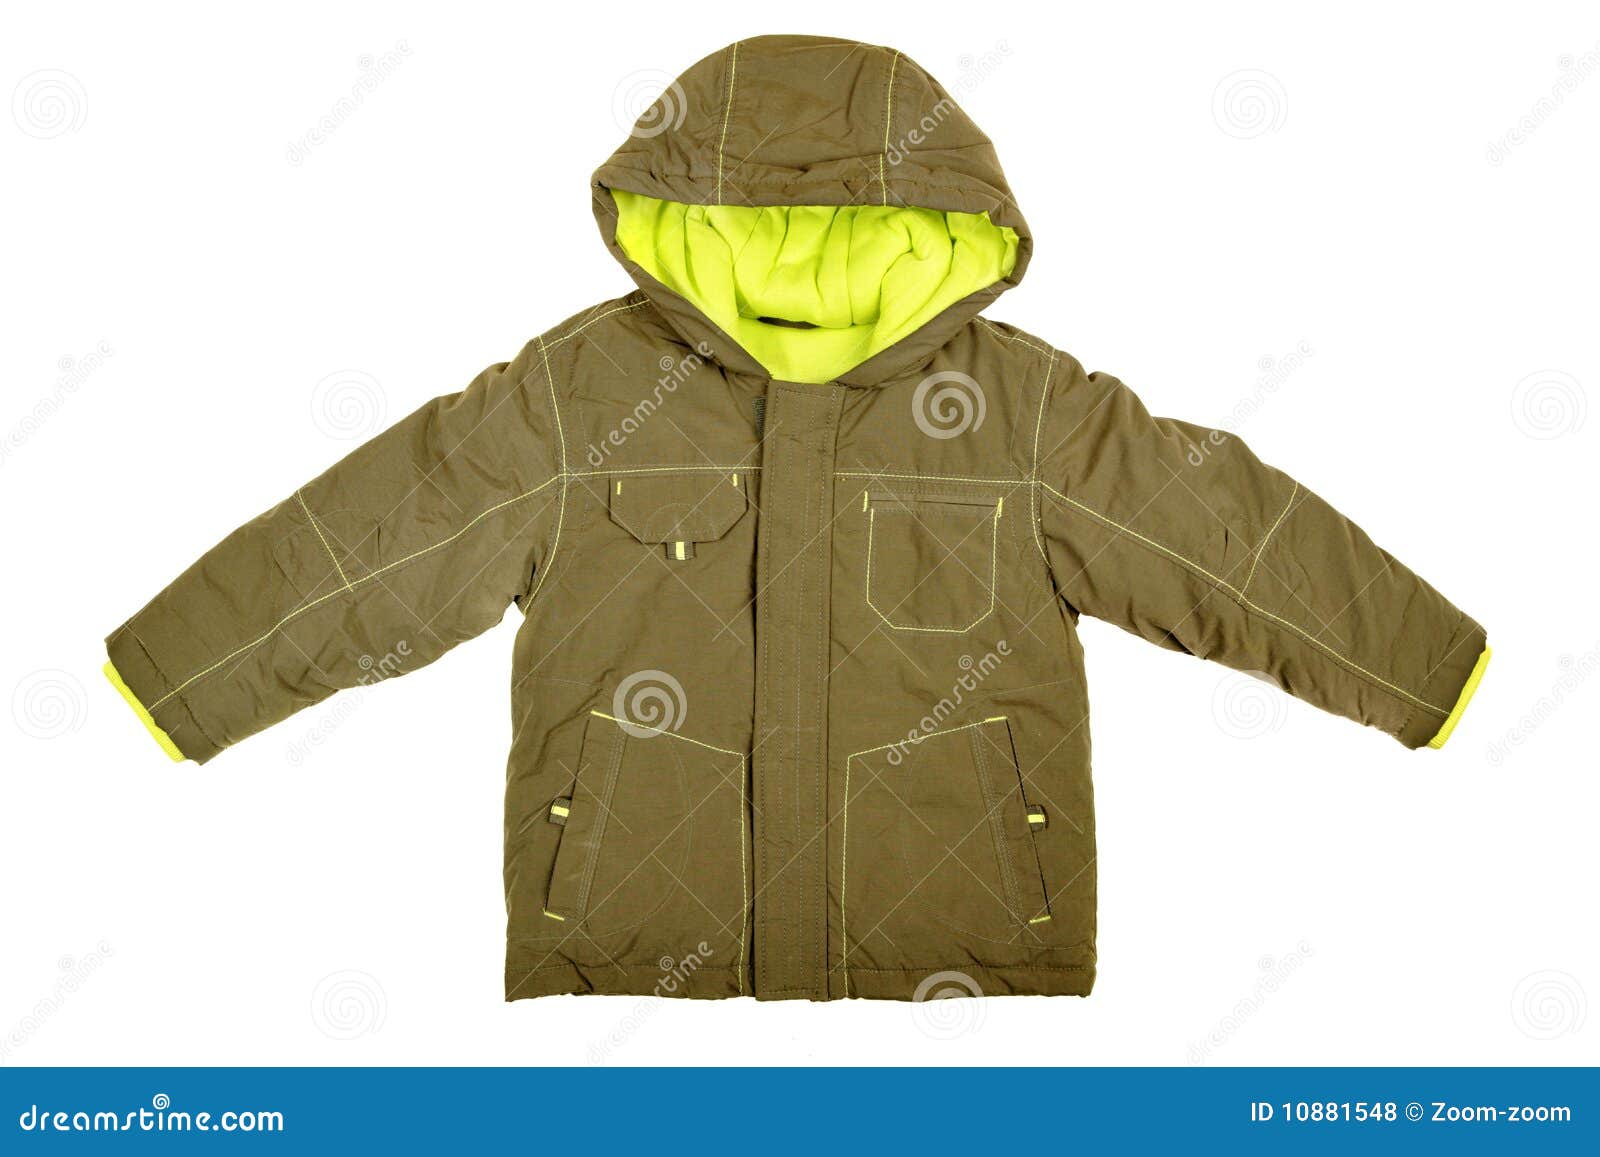 coat with hood